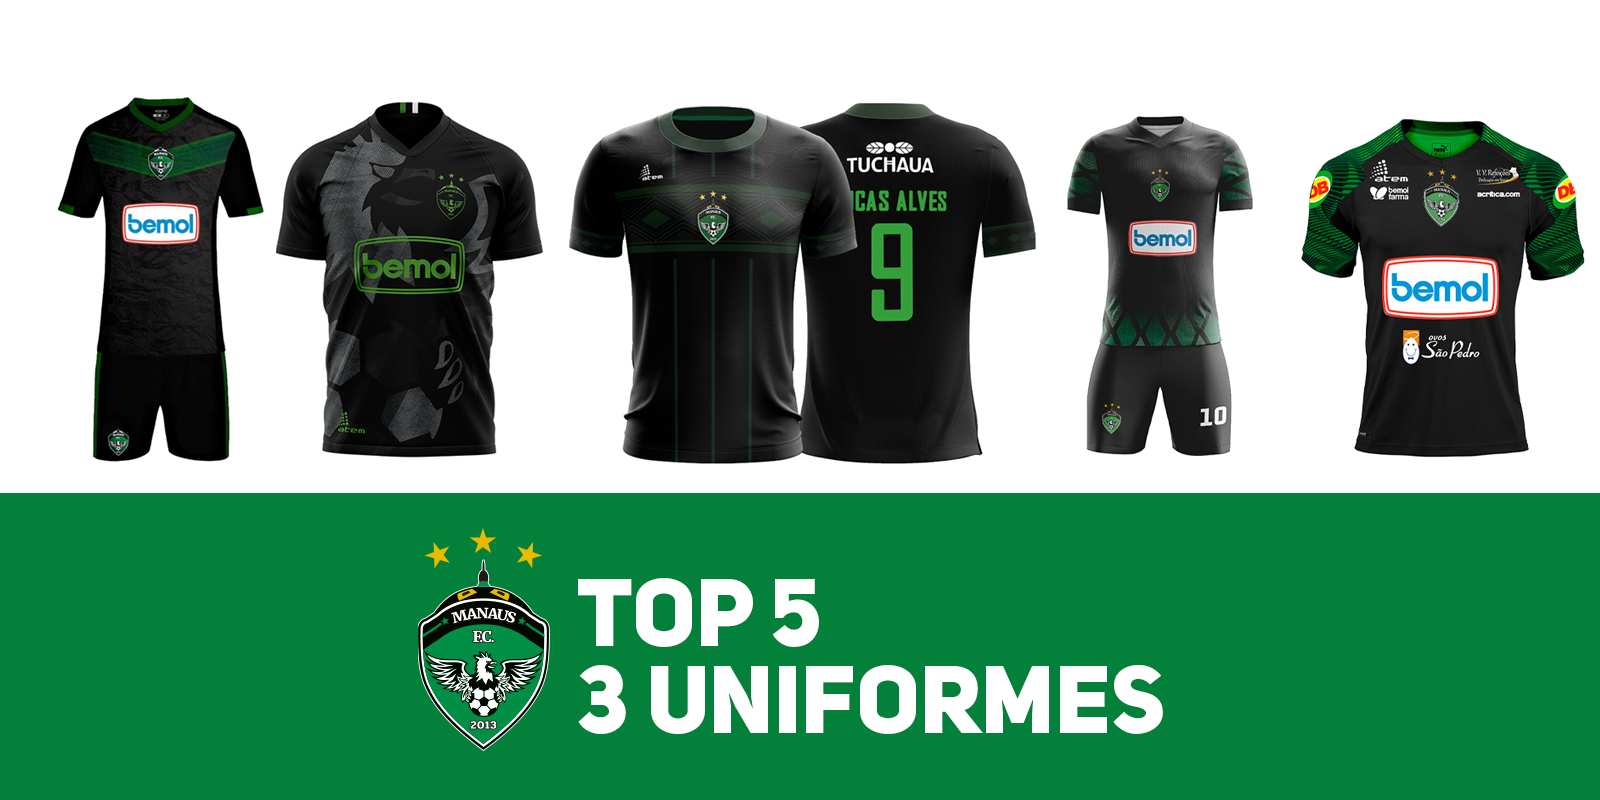 Conheça os cinco uniformes finalistas do concurso realizado pelo MANAUSFC